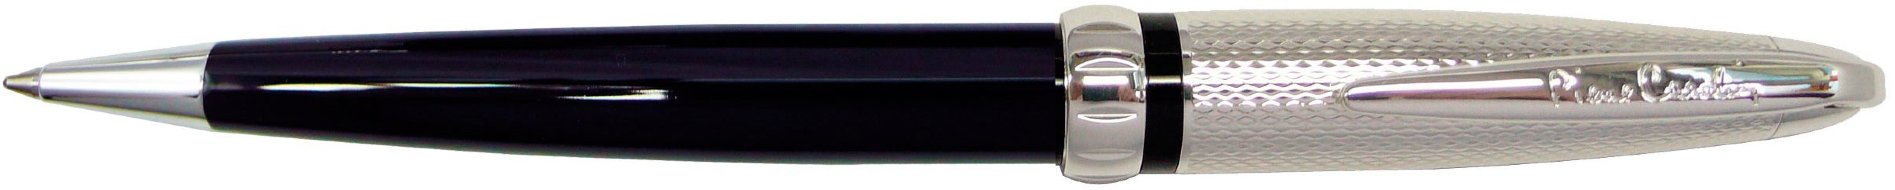 Шариковая ручка Pierre Cardin Espace черный лак, никель